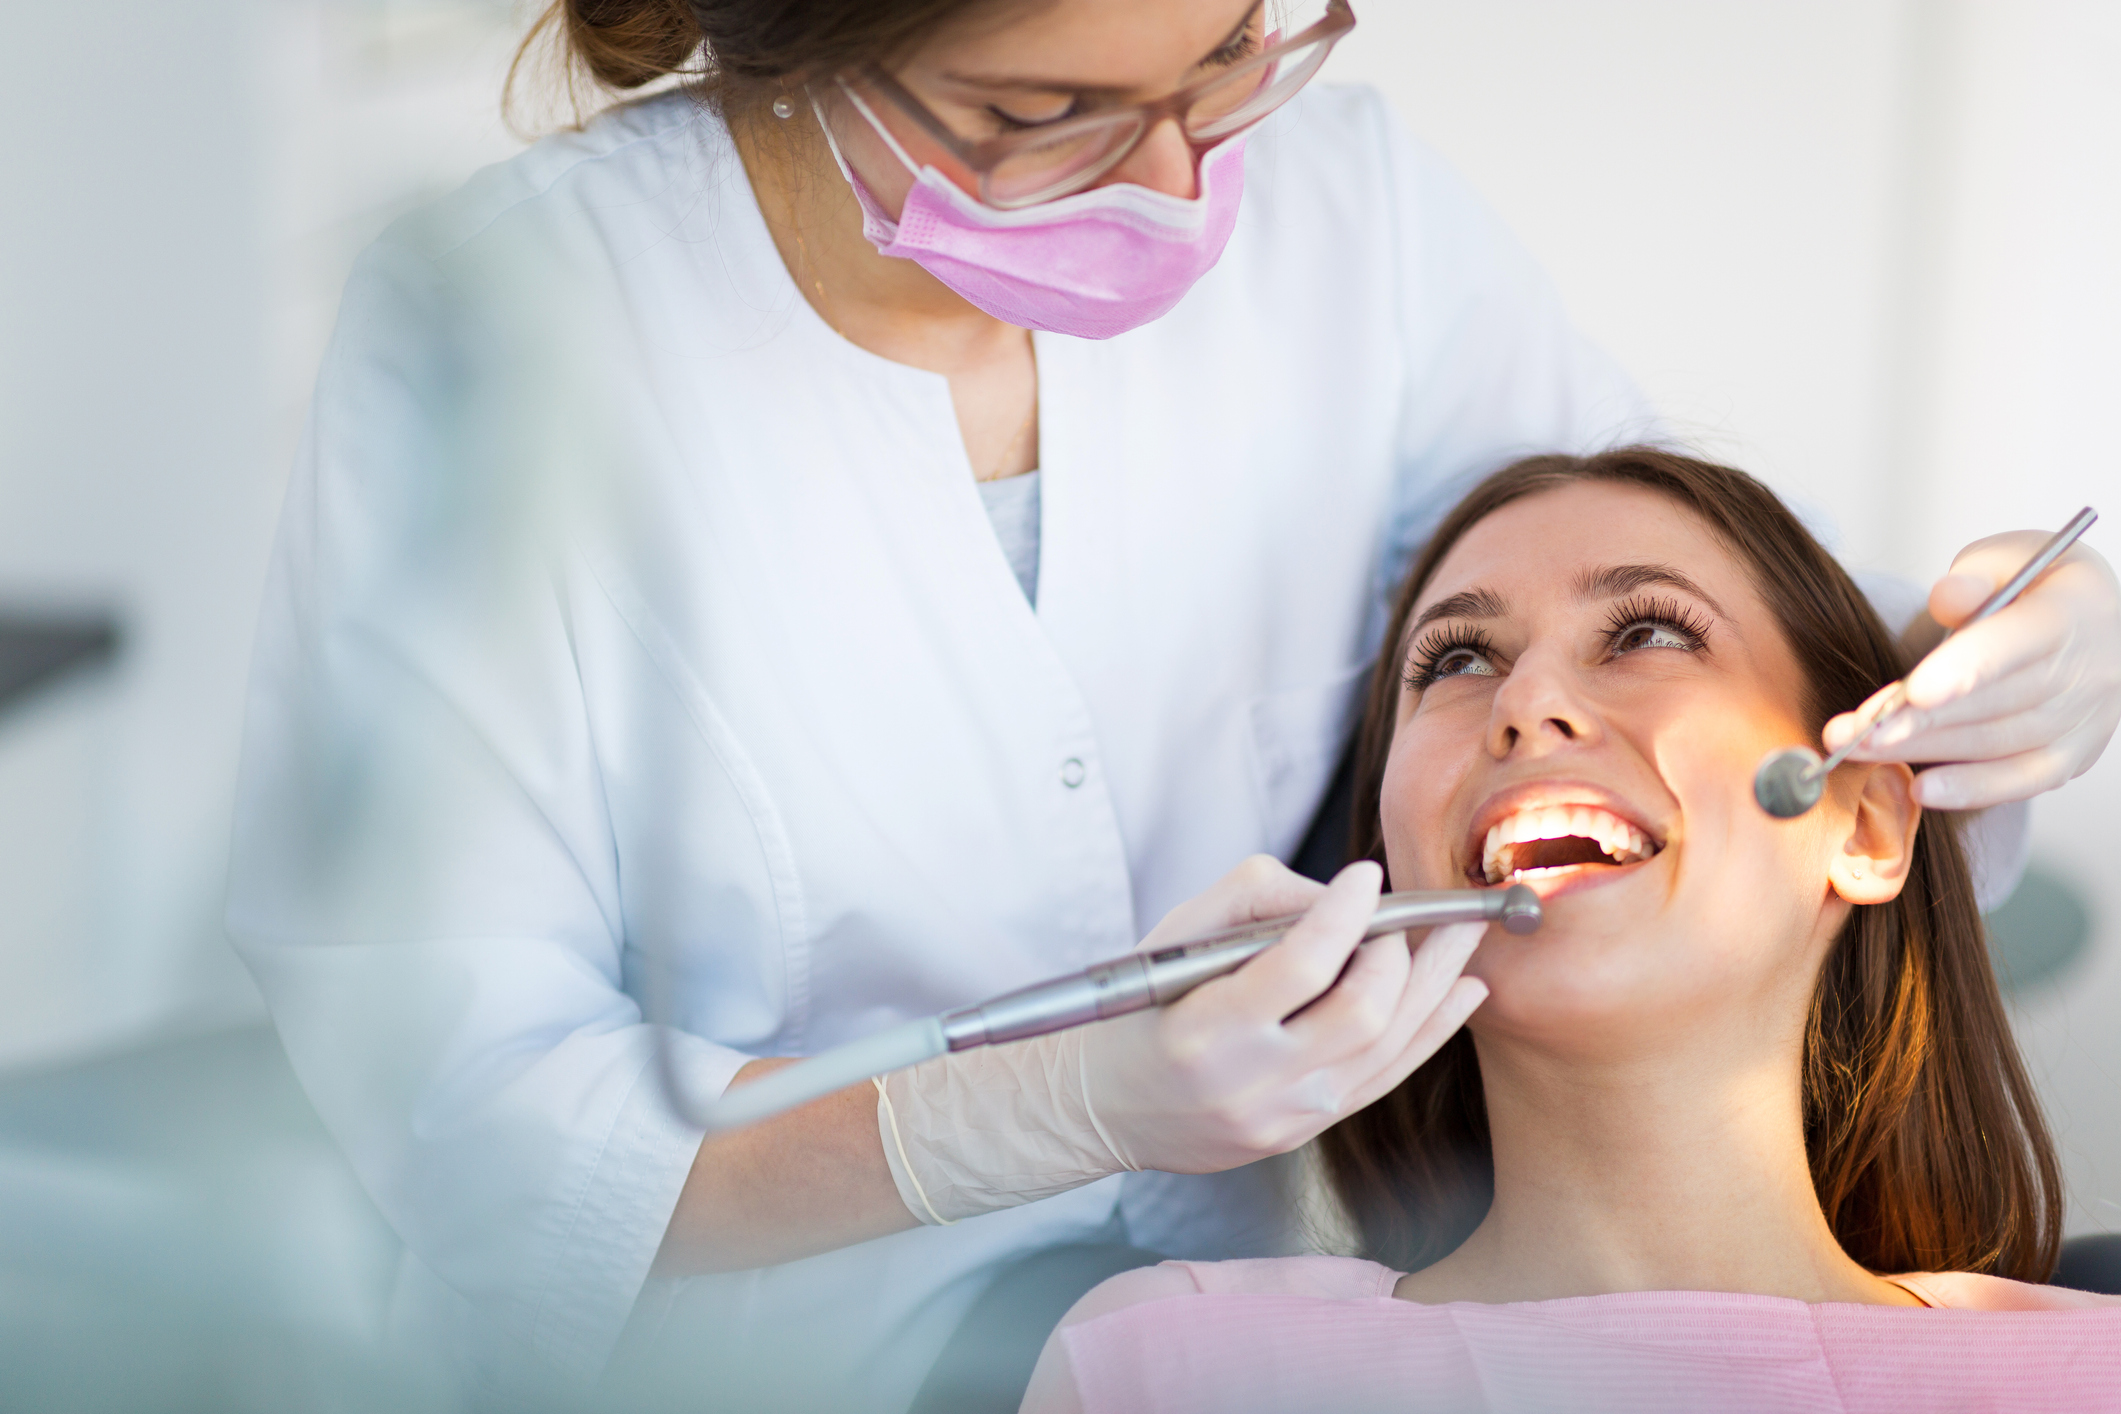 Aparat na zęby Praga Południe jak wybrać najwspanialszego dentystę?